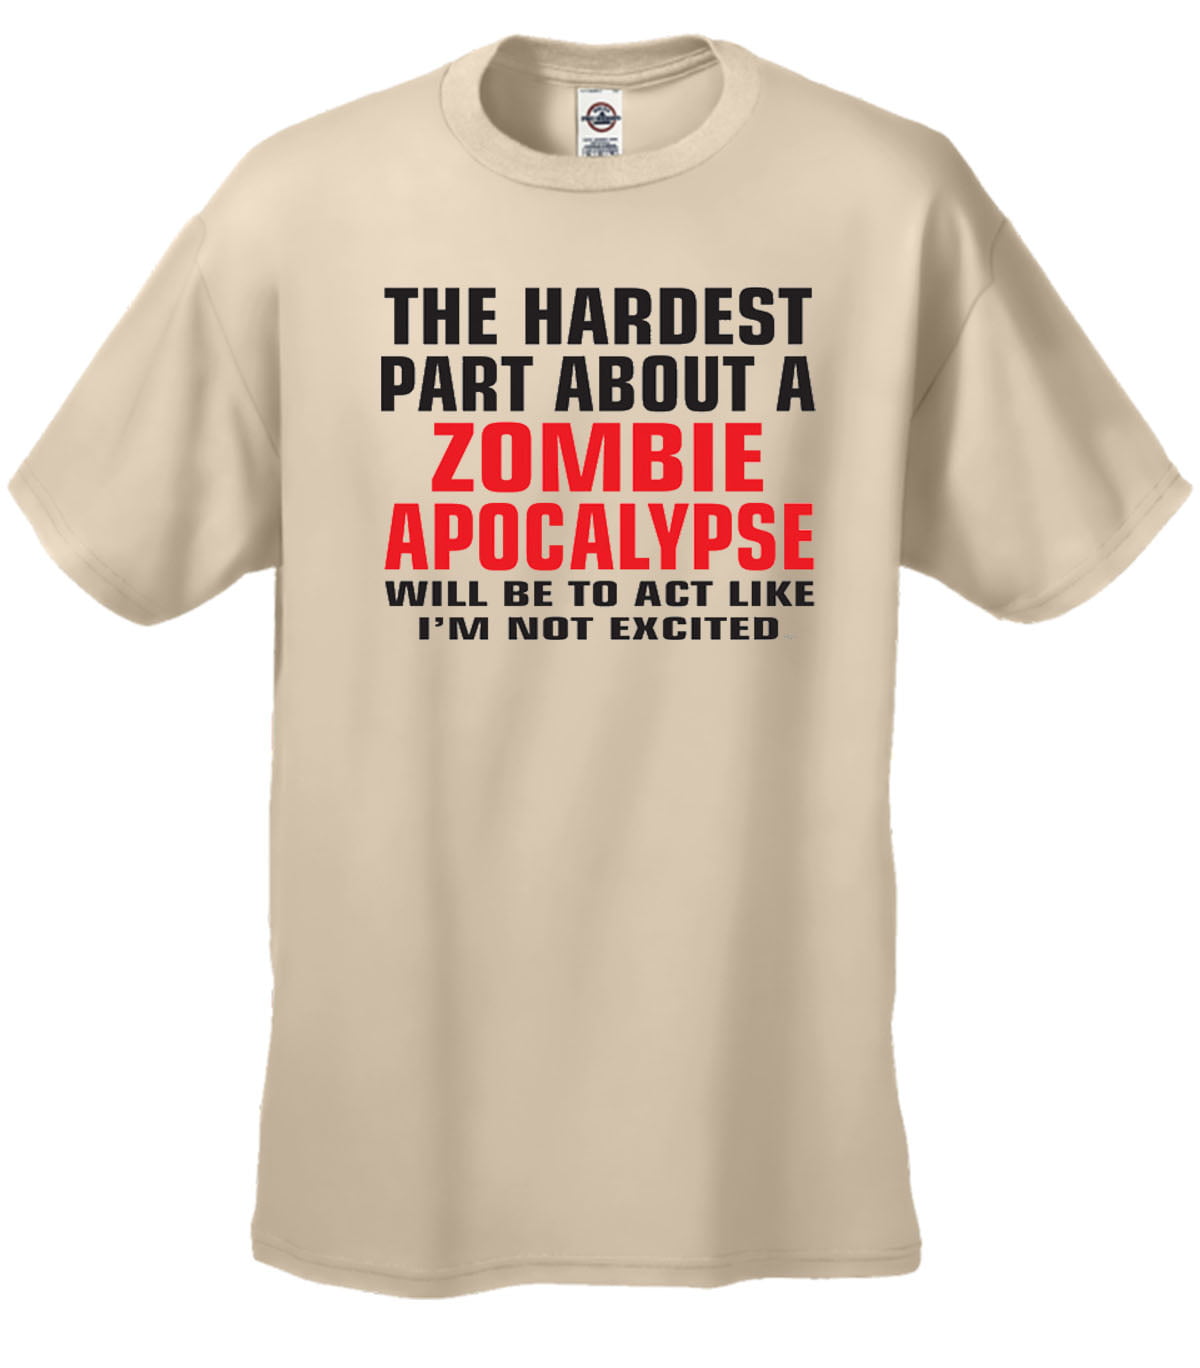 The Hardest Part About A Zombie Apocalypse T-Shirt-tan-large - Walmart.com